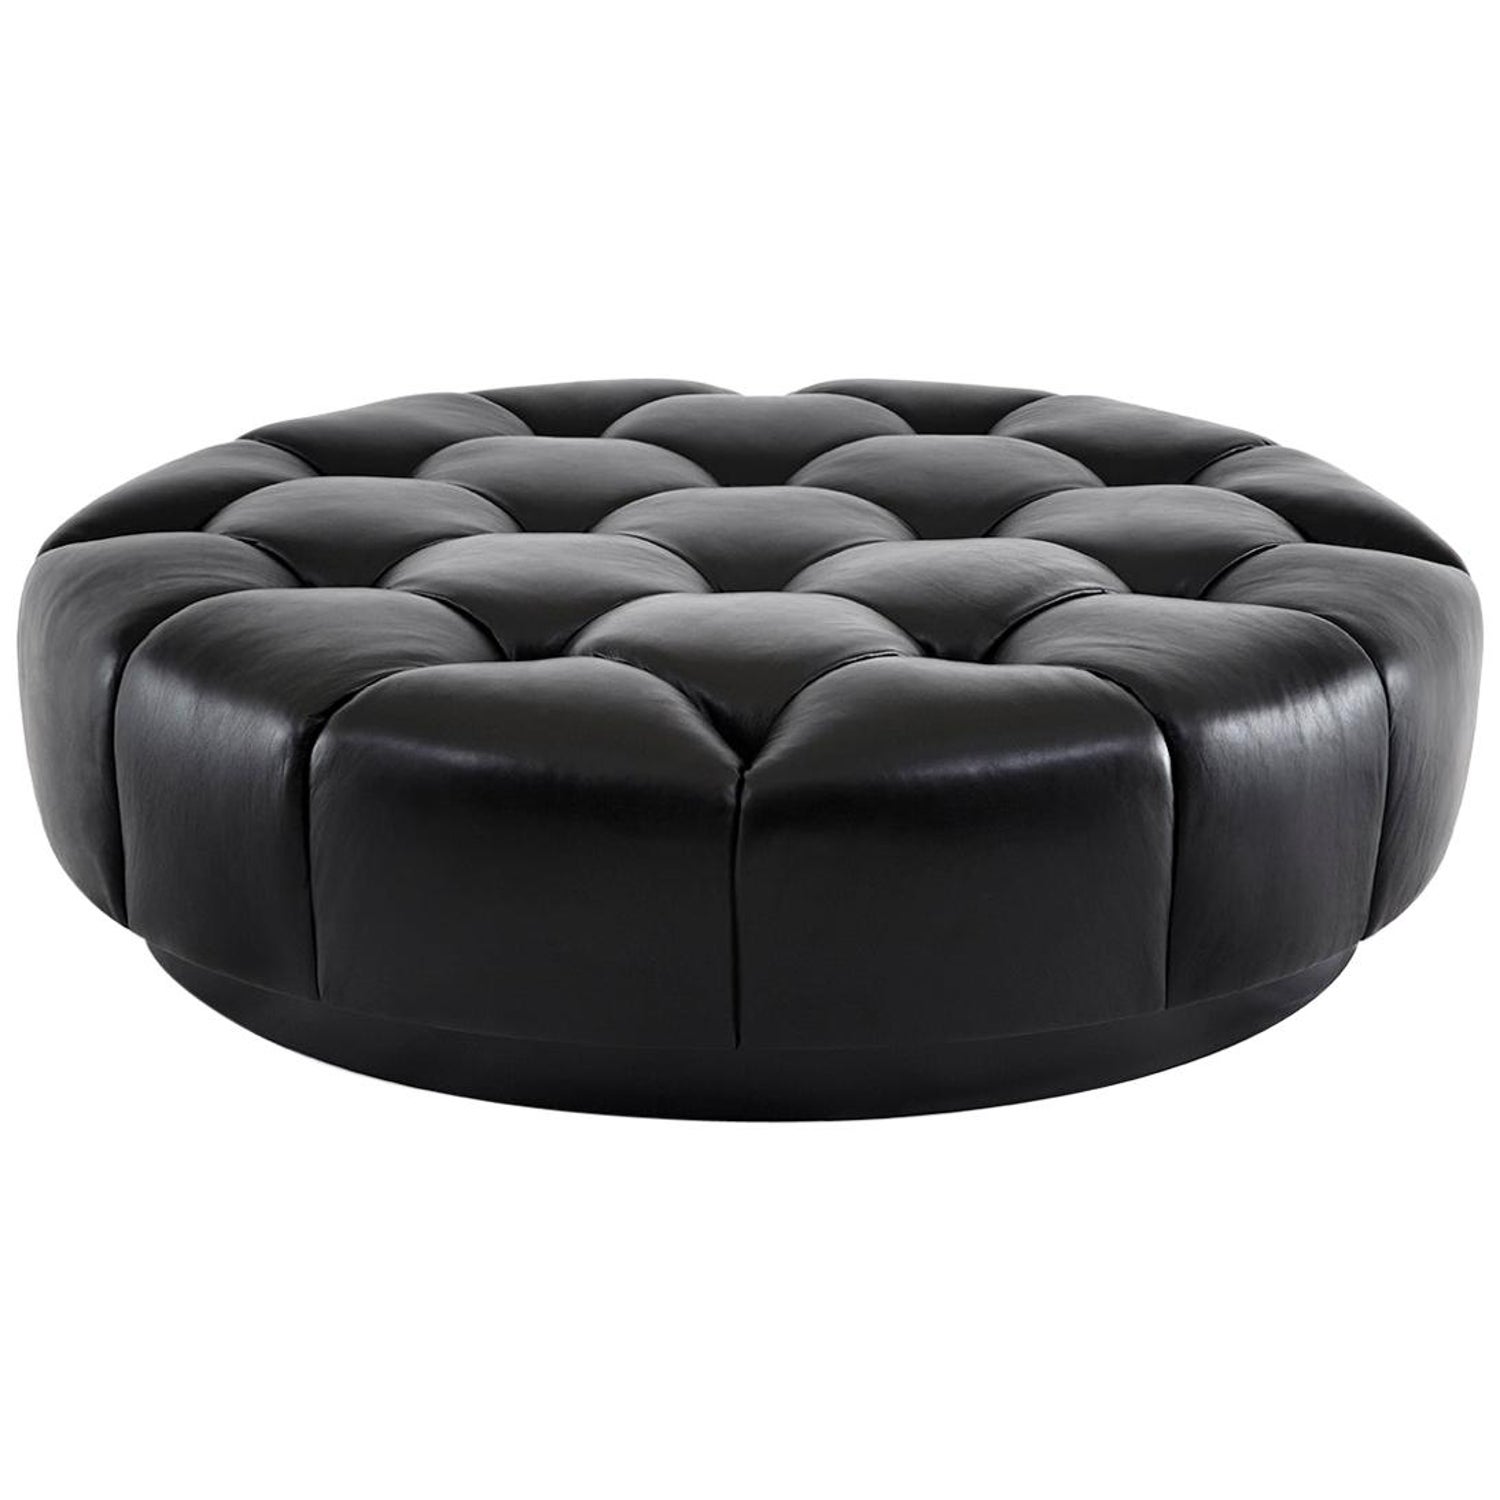 Zuri Furniture Lock Round Modern Tufted Ottoman Black 